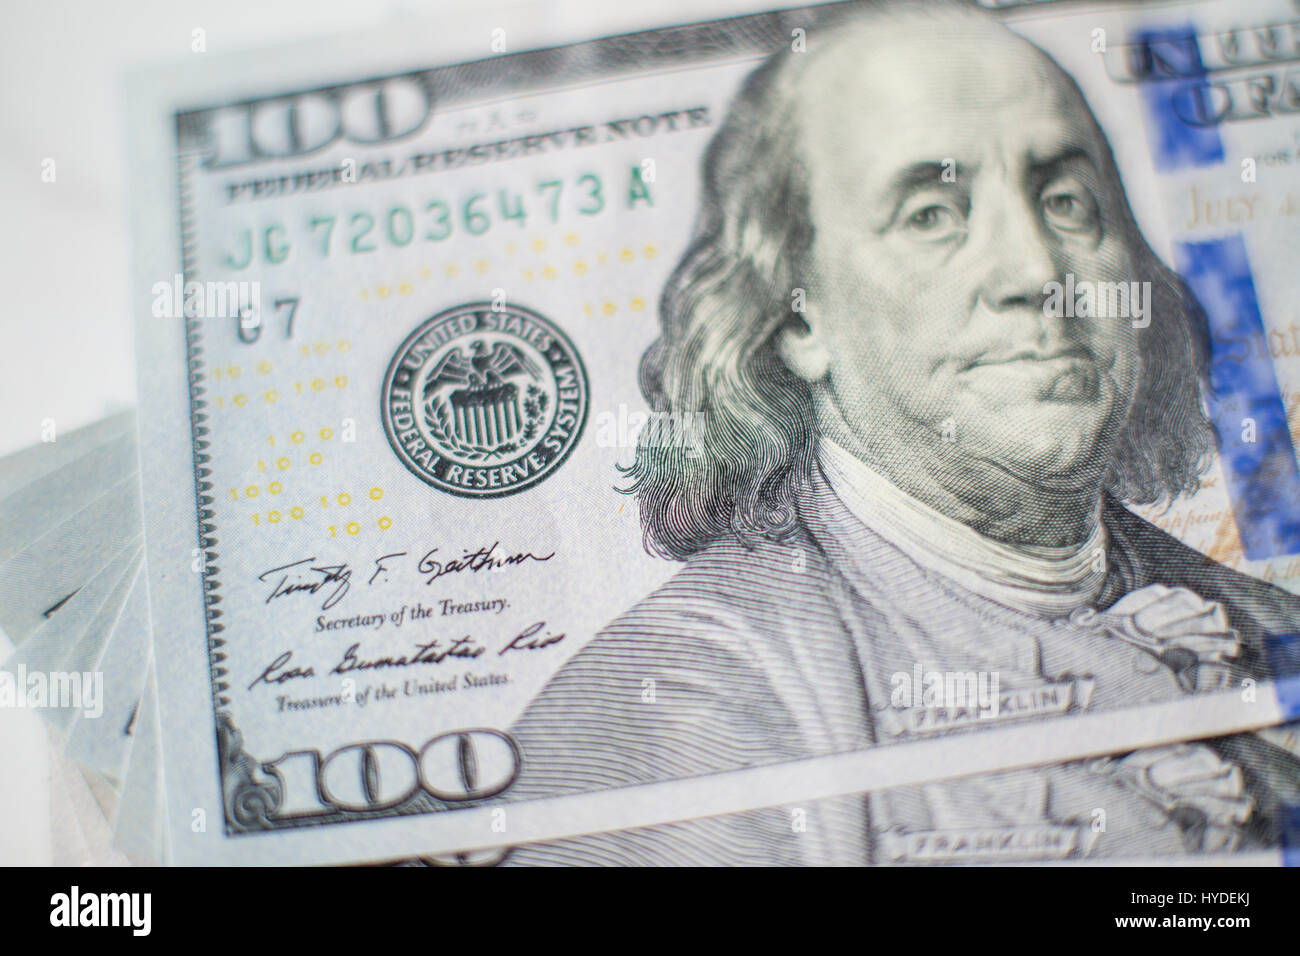 Closeup Detail Der neue Hundert-Euro-Scheine in US-Währung schwärmten aus, auf einem weißen Tisch Stockfoto